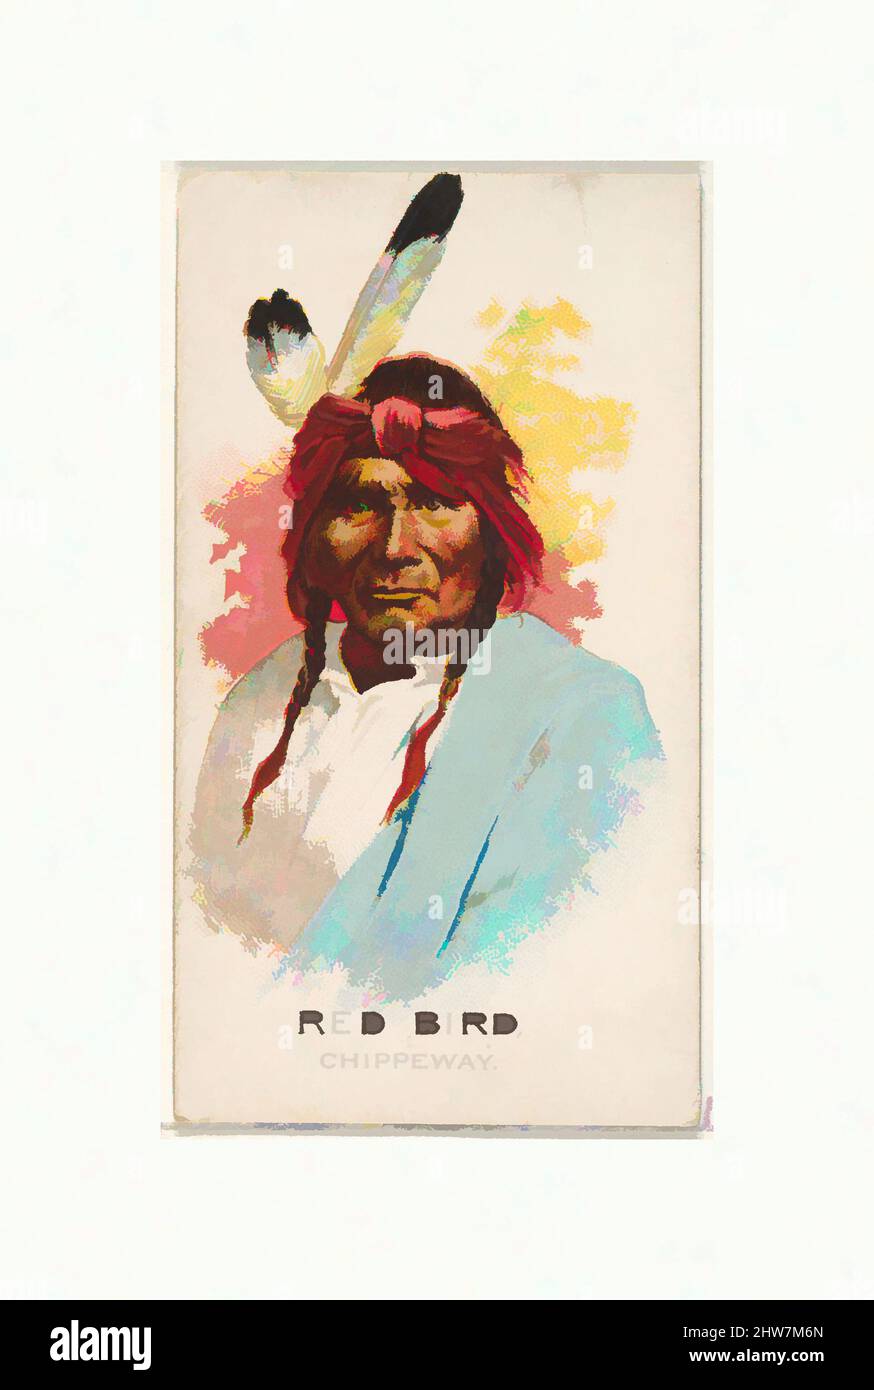 Art Inspired by Red Bird, Chippeway, della serie americana Indian Chiefs (N2) per Allen & Ginter Cigarettes Brands, 1888, litografia commerciale a colori, foglio: 2 3/4 x 1 1/2 poll. (7 x 3,8 cm), carte commerciali della serie 'American Indian Chiefs' (N2), pubblicata nel 1888 in una serie di 50, opere classiche modernizzate da Artotop con un tuffo di modernità. Forme, colore e valore, impatto visivo accattivante sulle emozioni artistiche attraverso la libertà delle opere d'arte in modo contemporaneo. Un messaggio senza tempo che persegue una nuova direzione selvaggiamente creativa. Artisti che si rivolgono al supporto digitale e creano l'NFT Artotop Foto Stock